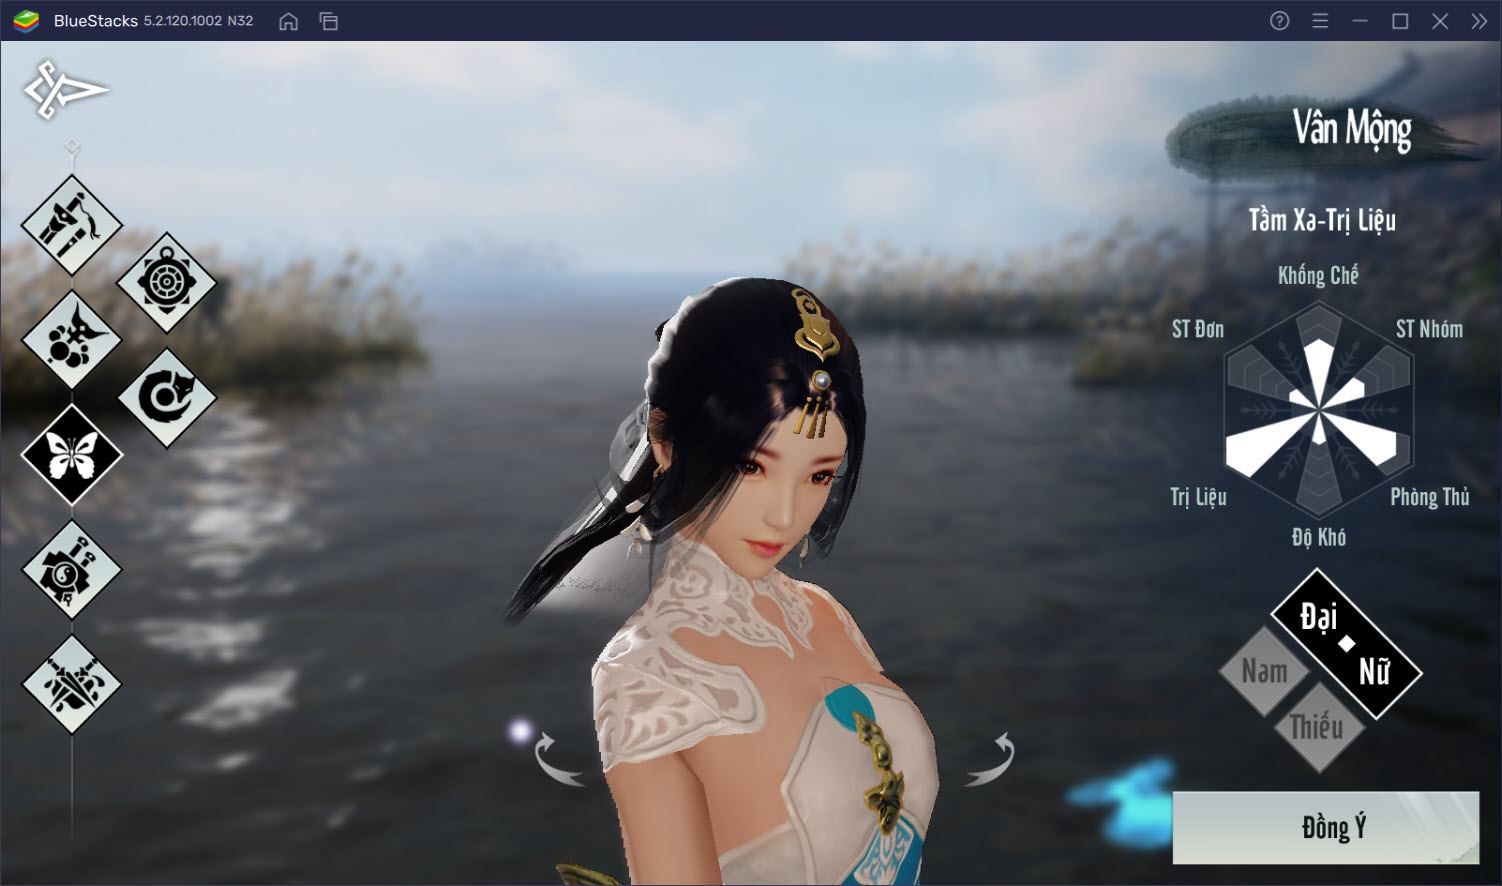 Trải nghiệm siêu phẩm game 3D Nhất Mộng Giang Hồ trên PC cùng BlueStacks